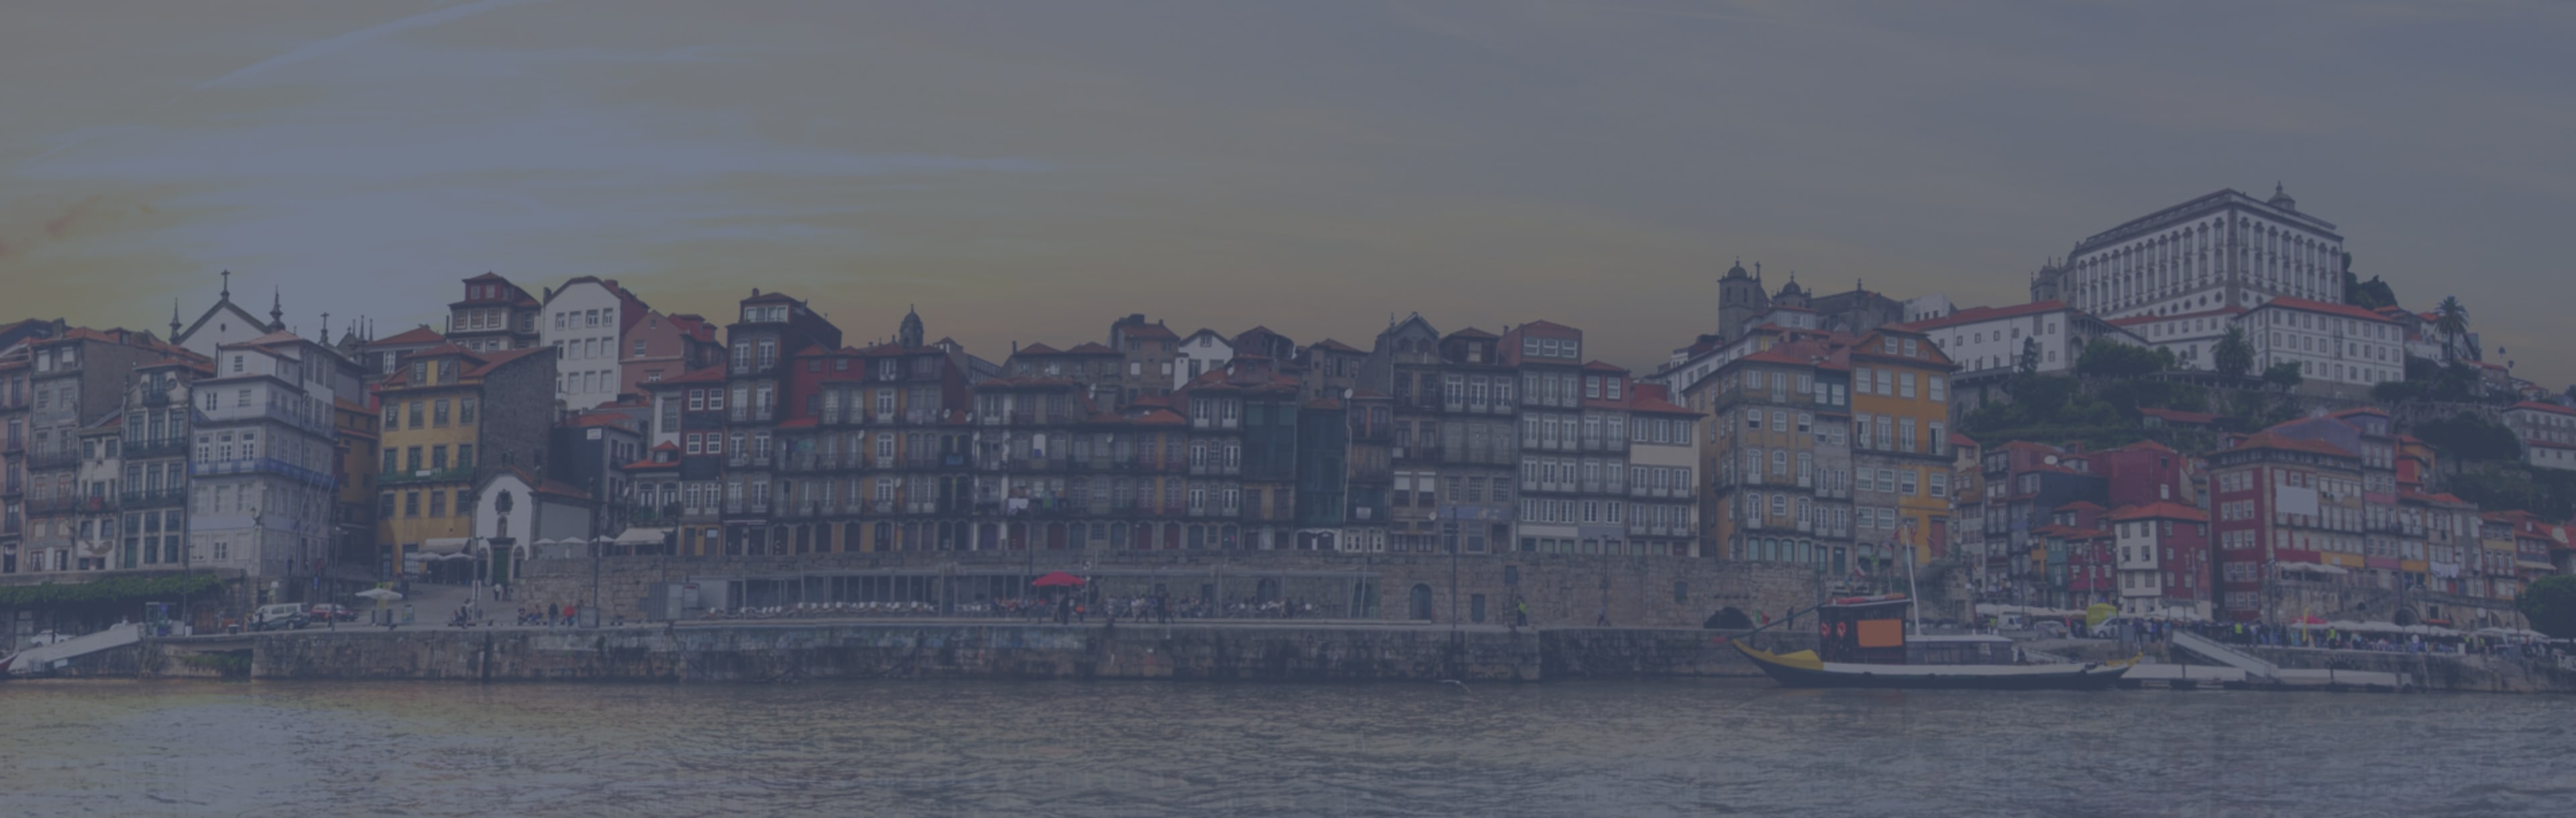 Instituto Superior de Contabilidade e Administração do Porto